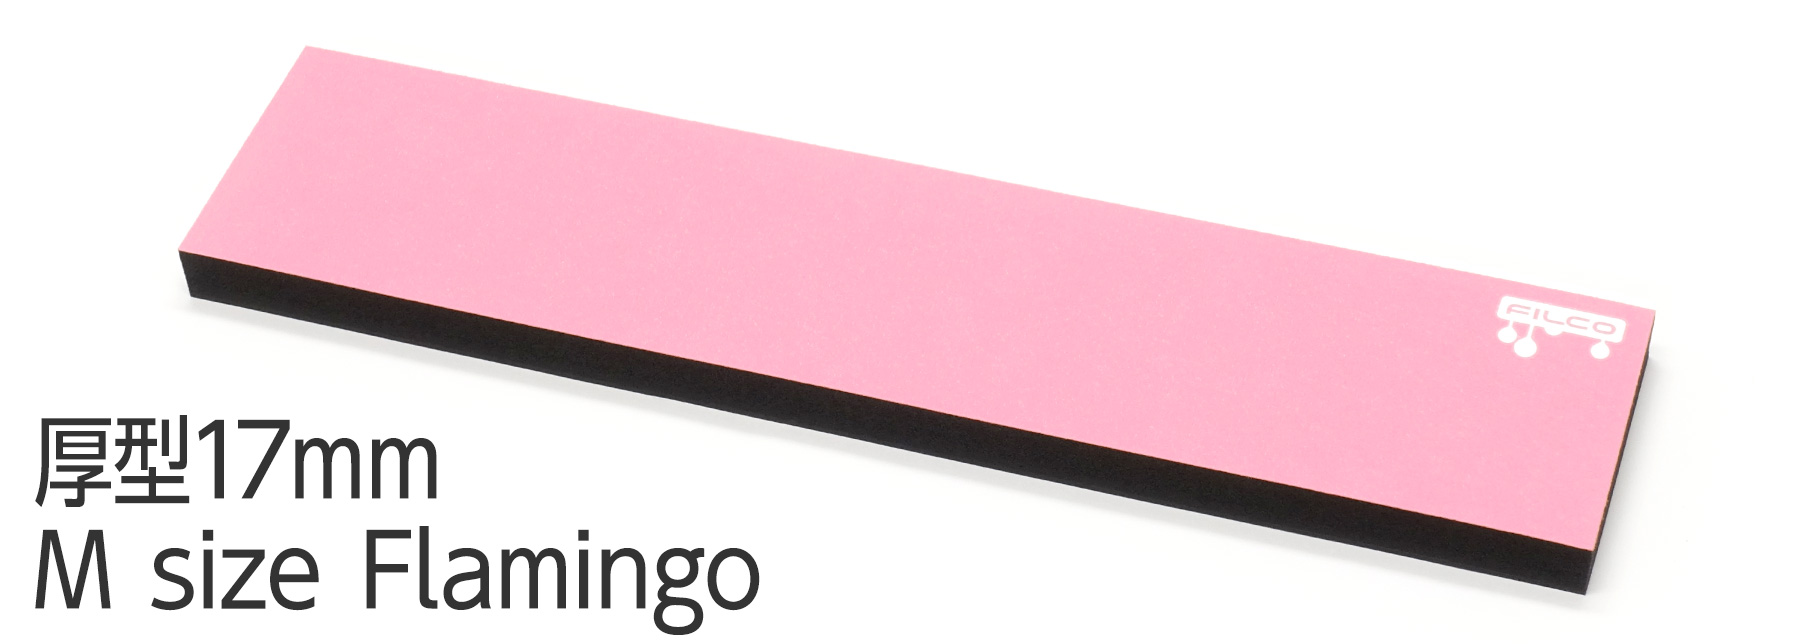 【通販限定カラー】FILCO Majestouch Wrist Rest "Macaron" 厚型17mm・Mサイズ・Flamingo